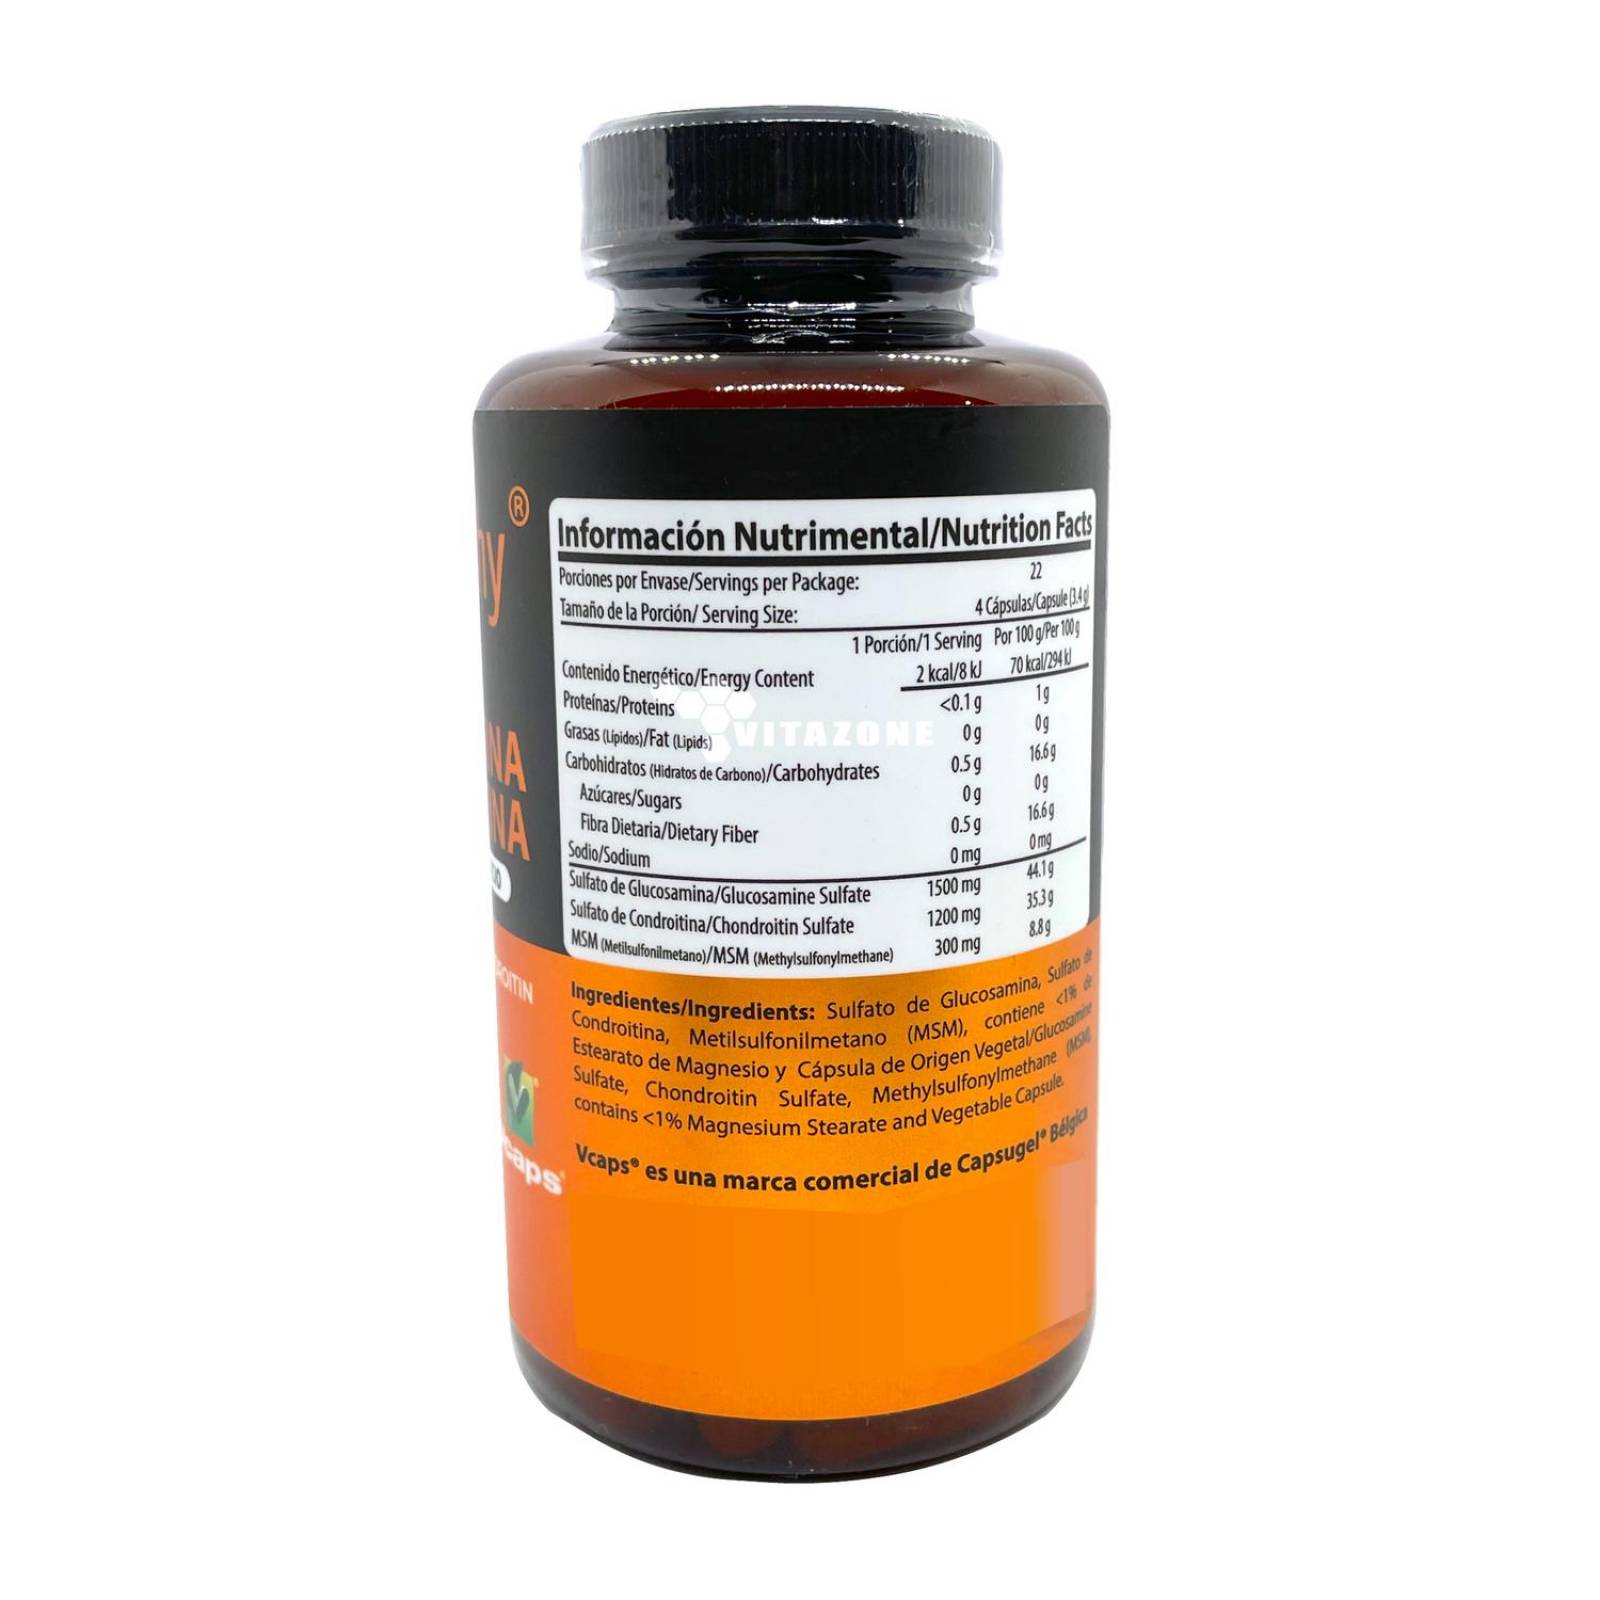 Glucosamina Condroitina y MSM 90 cápsulas Wellthy (2 pzs) 